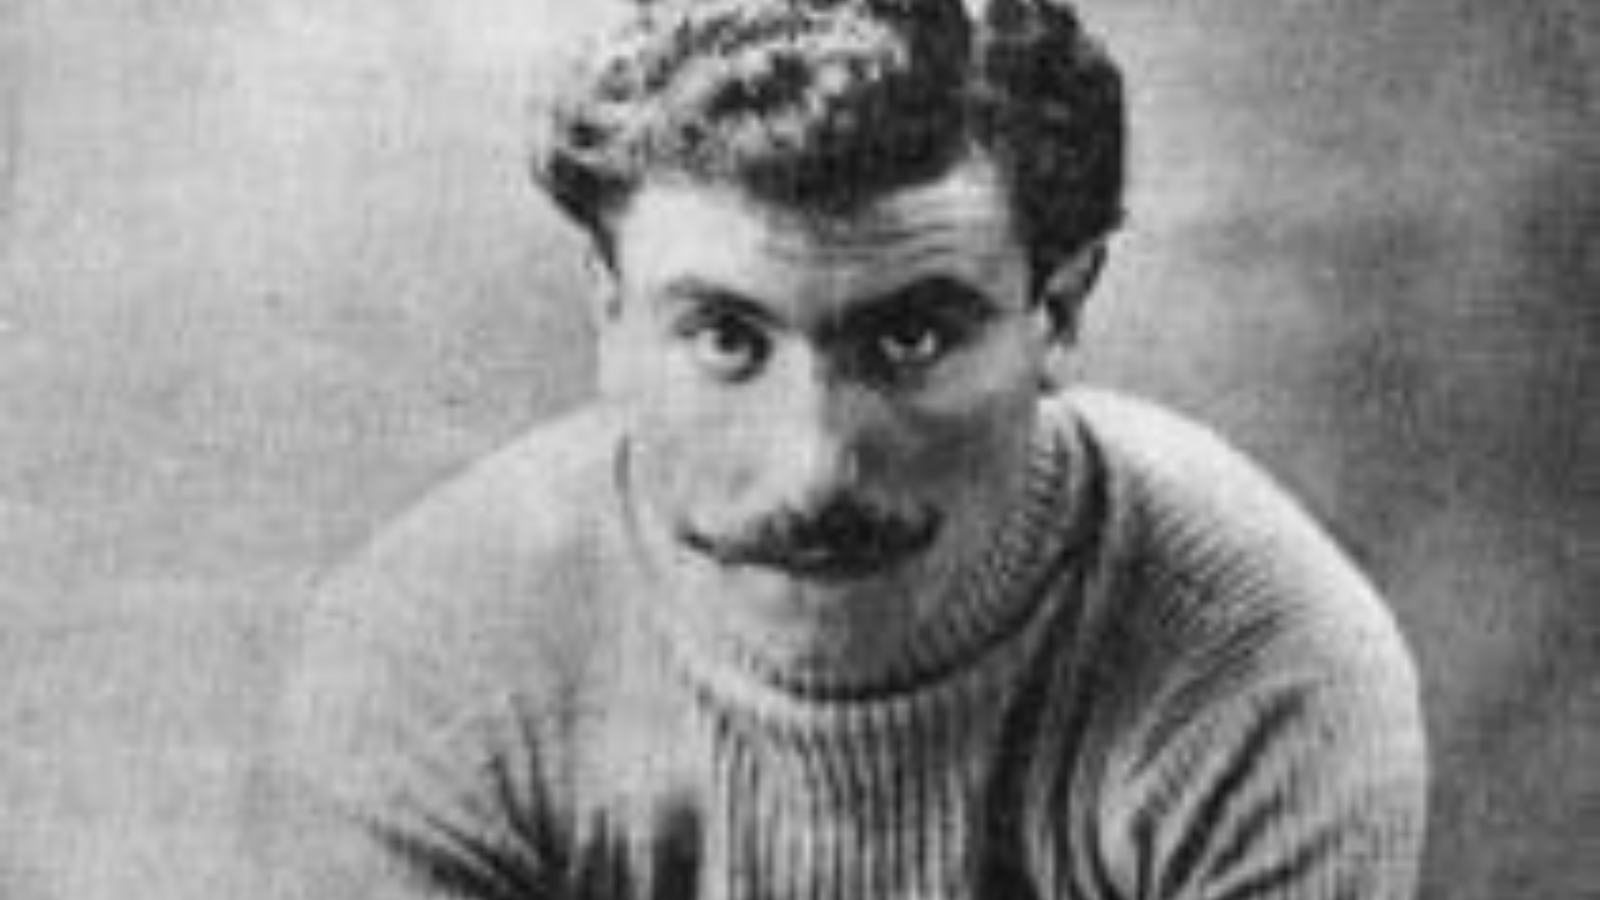 Tour de France history on PelotonTales blog: Louis Trousselier, Tour de France winner 1905